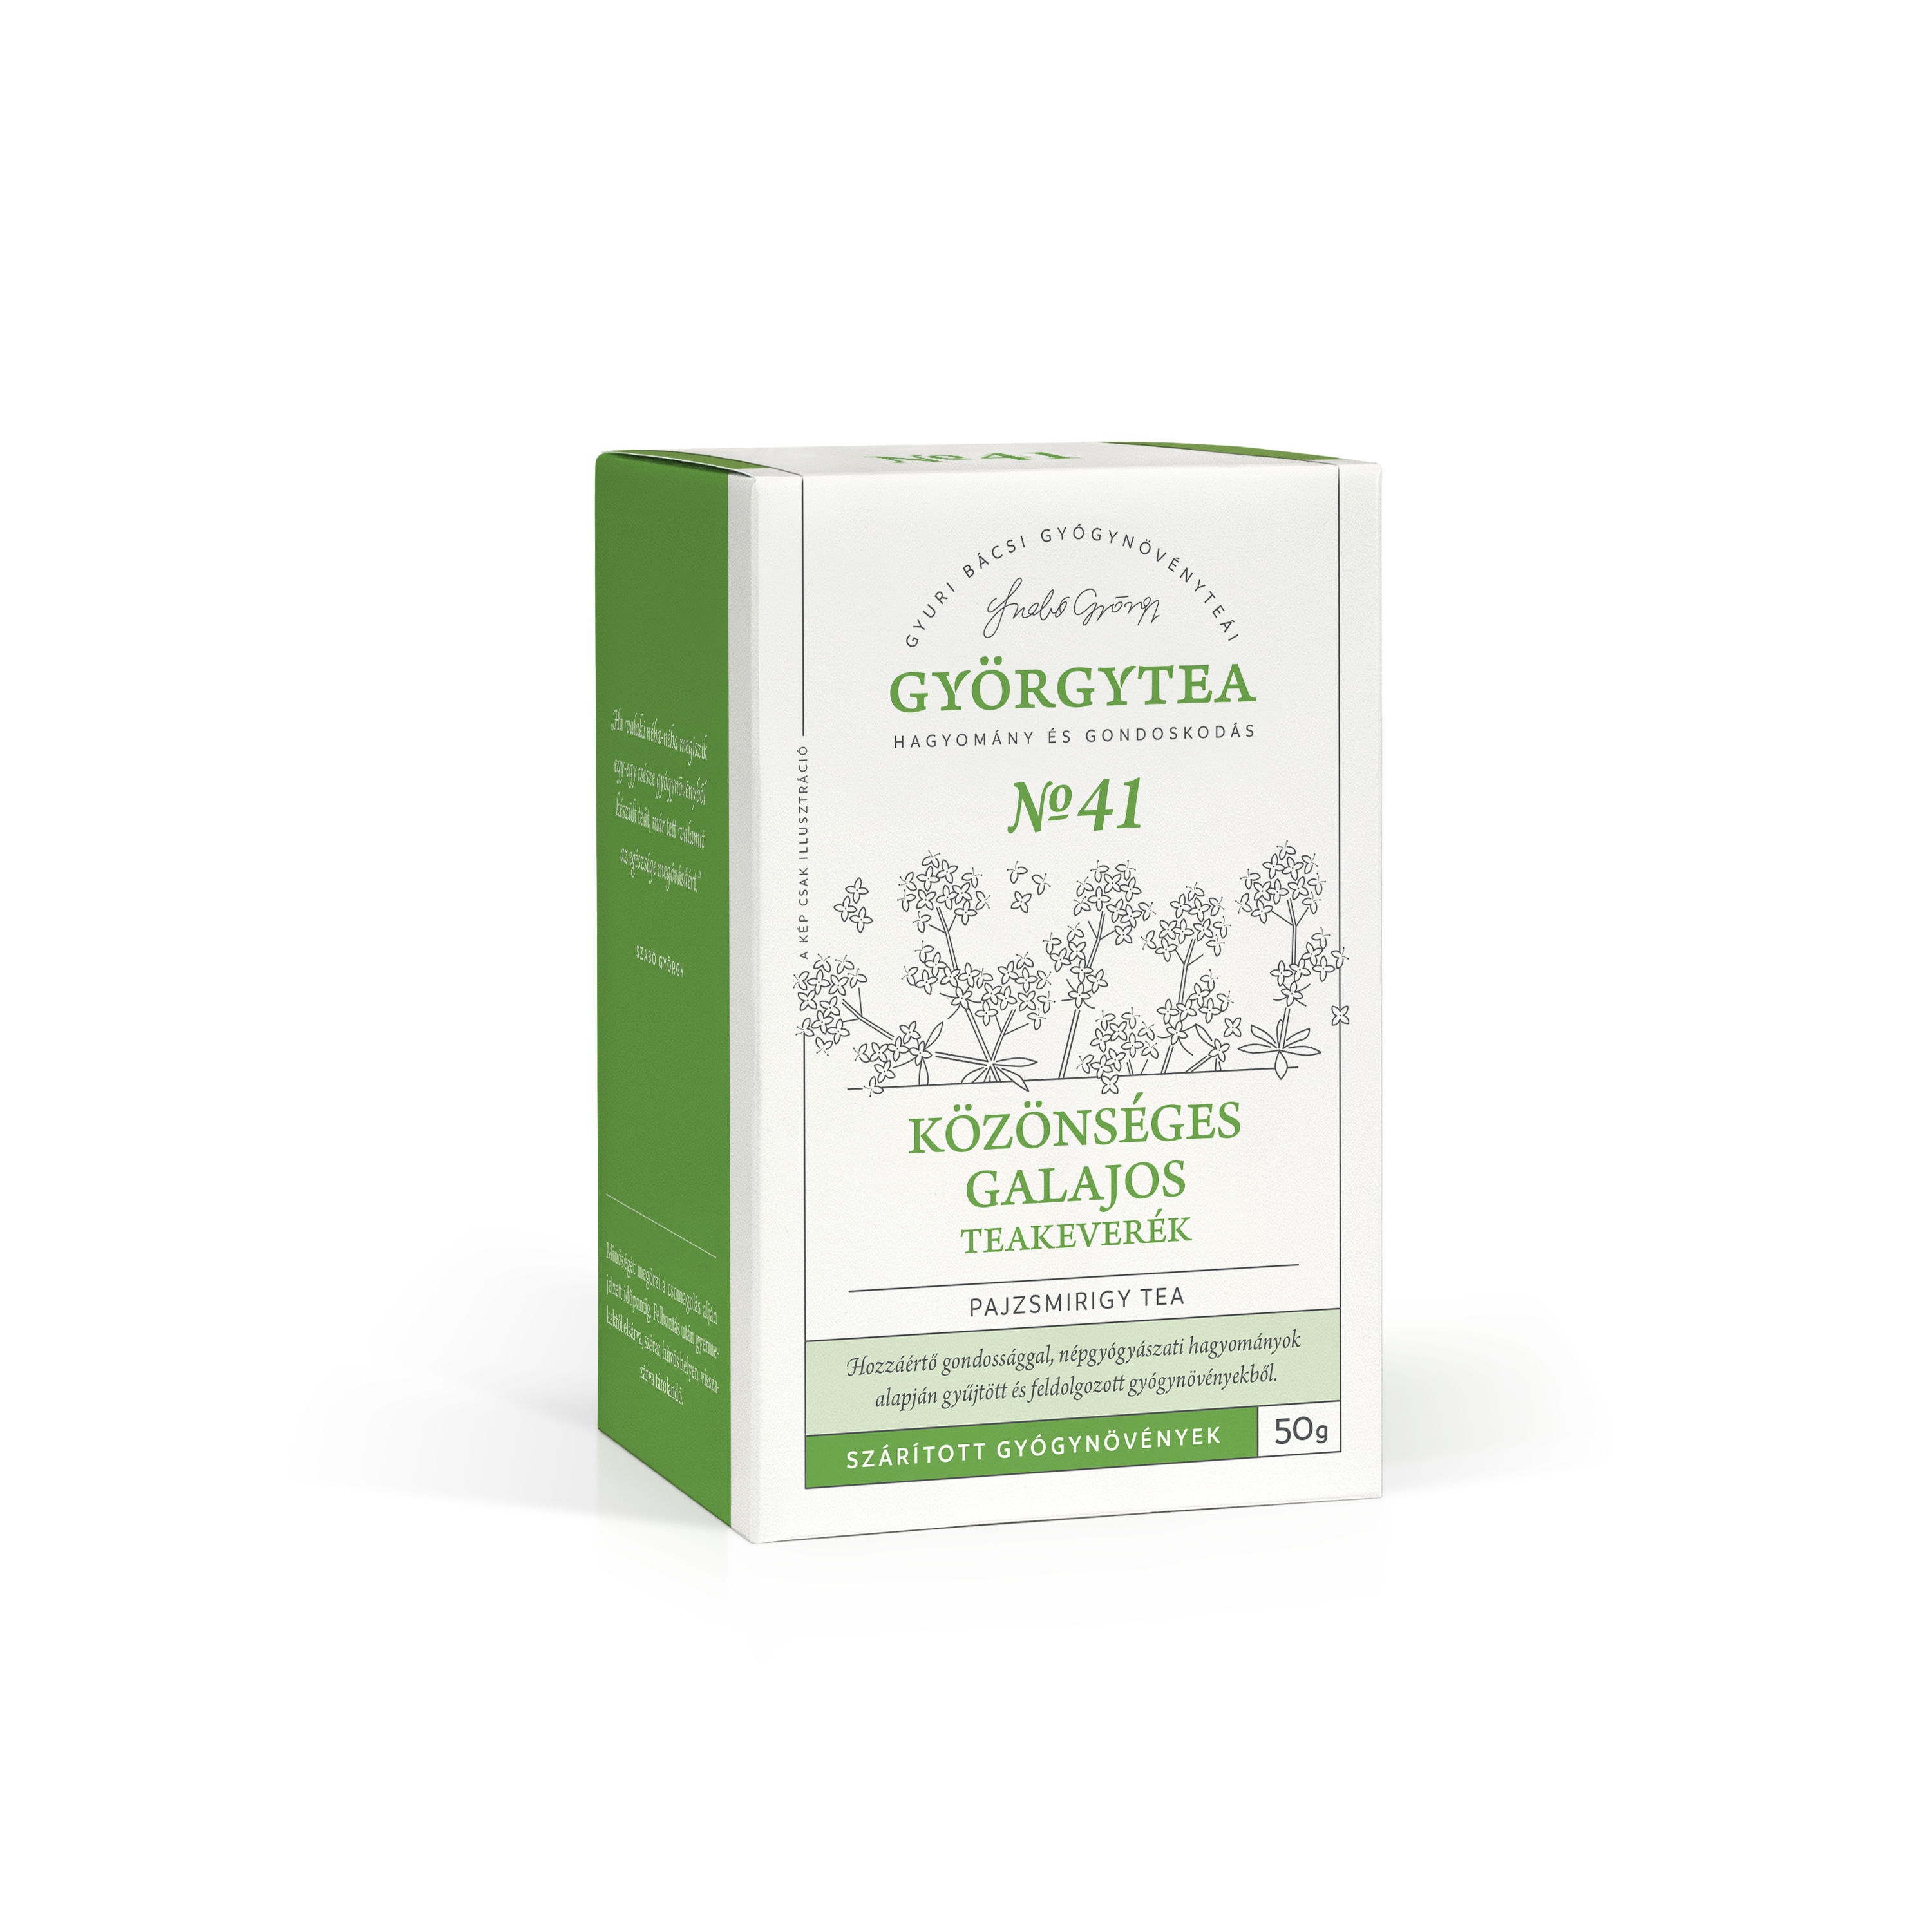 Közönséges galajos teakeverék (Pajzsmirigy tea)